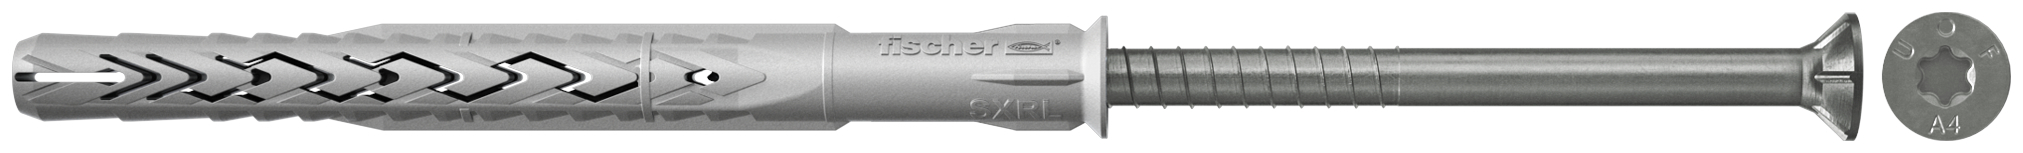 fischer Tasselli prolungati SXRL 10X290 T A4 (1 Pz.) Tassello prolungato in nylon con marcatura CE con vite premontata in acciaio inox A4, T.S.P. impronta torx.